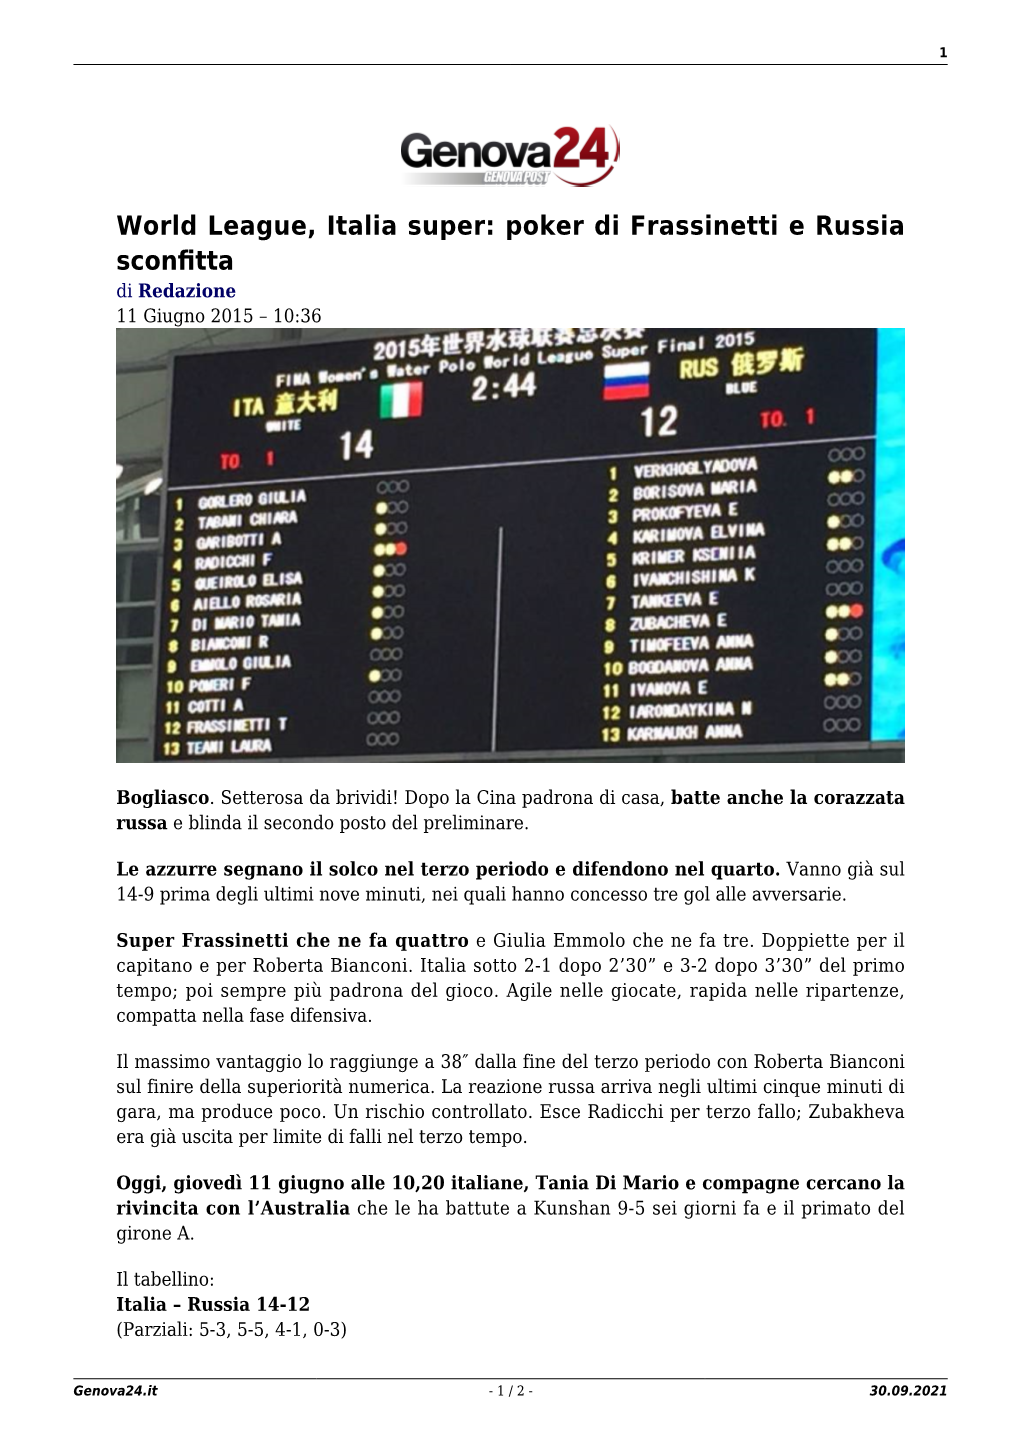 World League, Italia Super: Poker Di Frassinetti E Russia Sconfitta